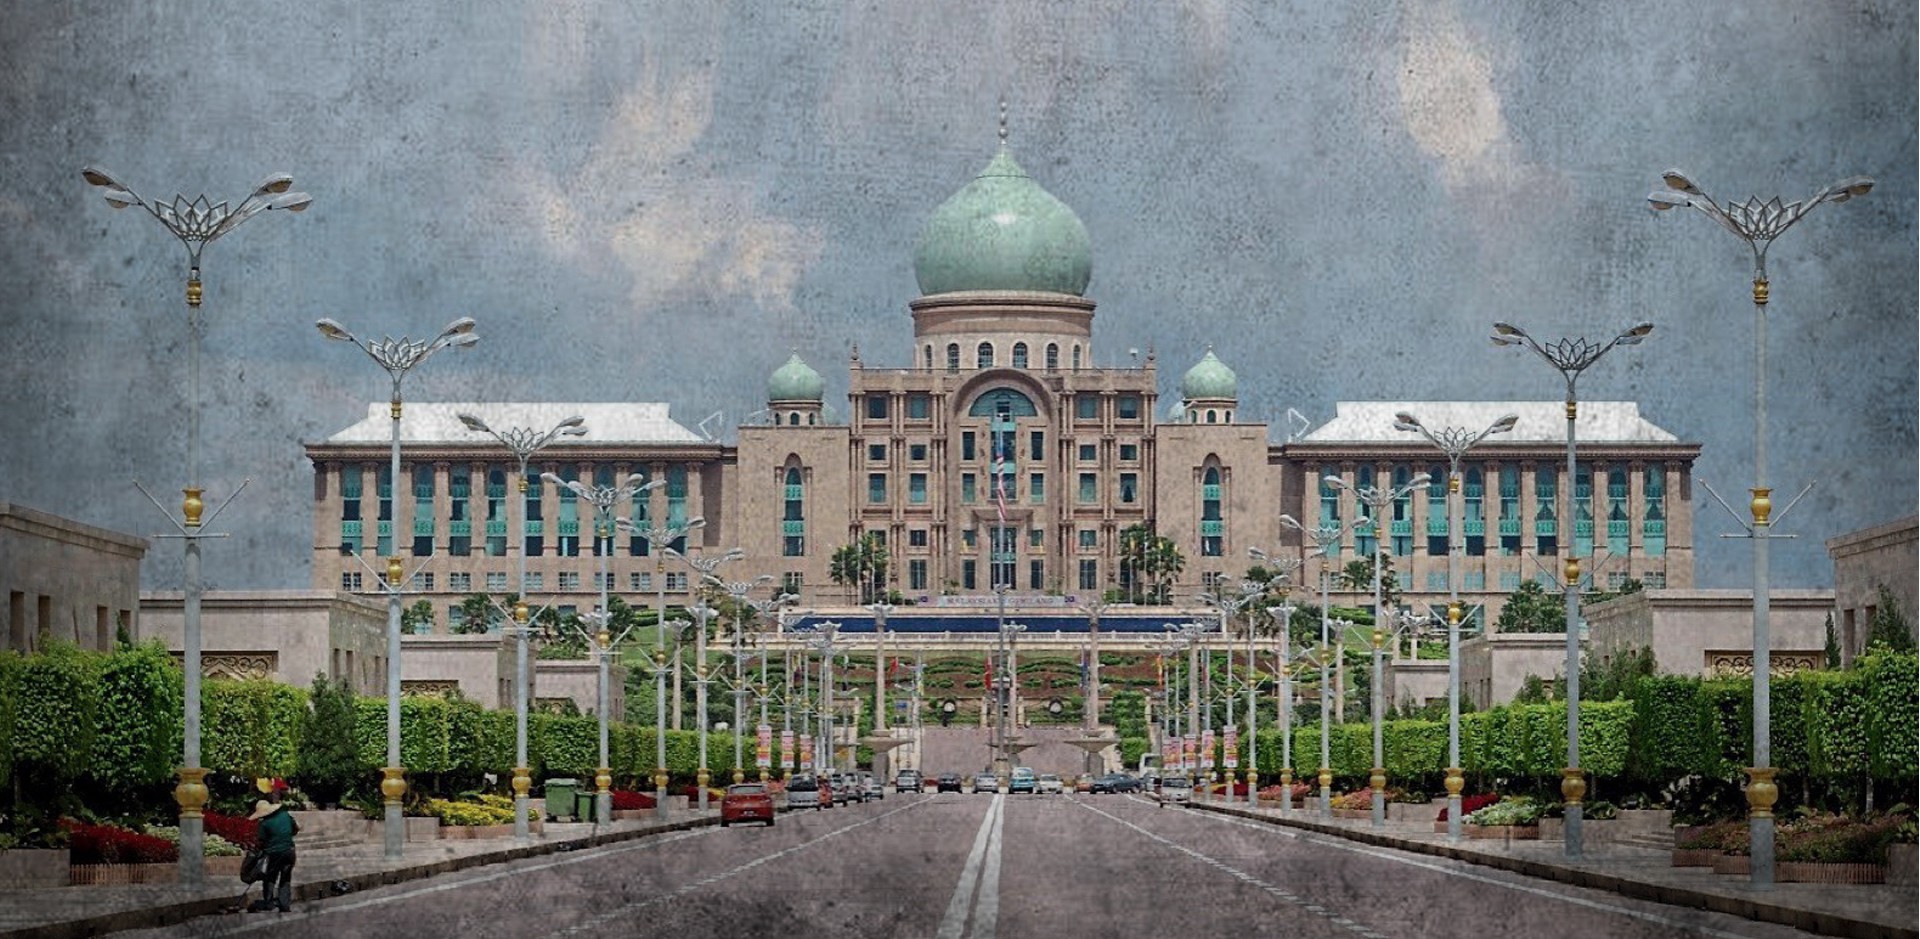 Khu đô thị mới Putrajaya - dấu ấn của Thủ tướng Mahathir - Ảnh 7.